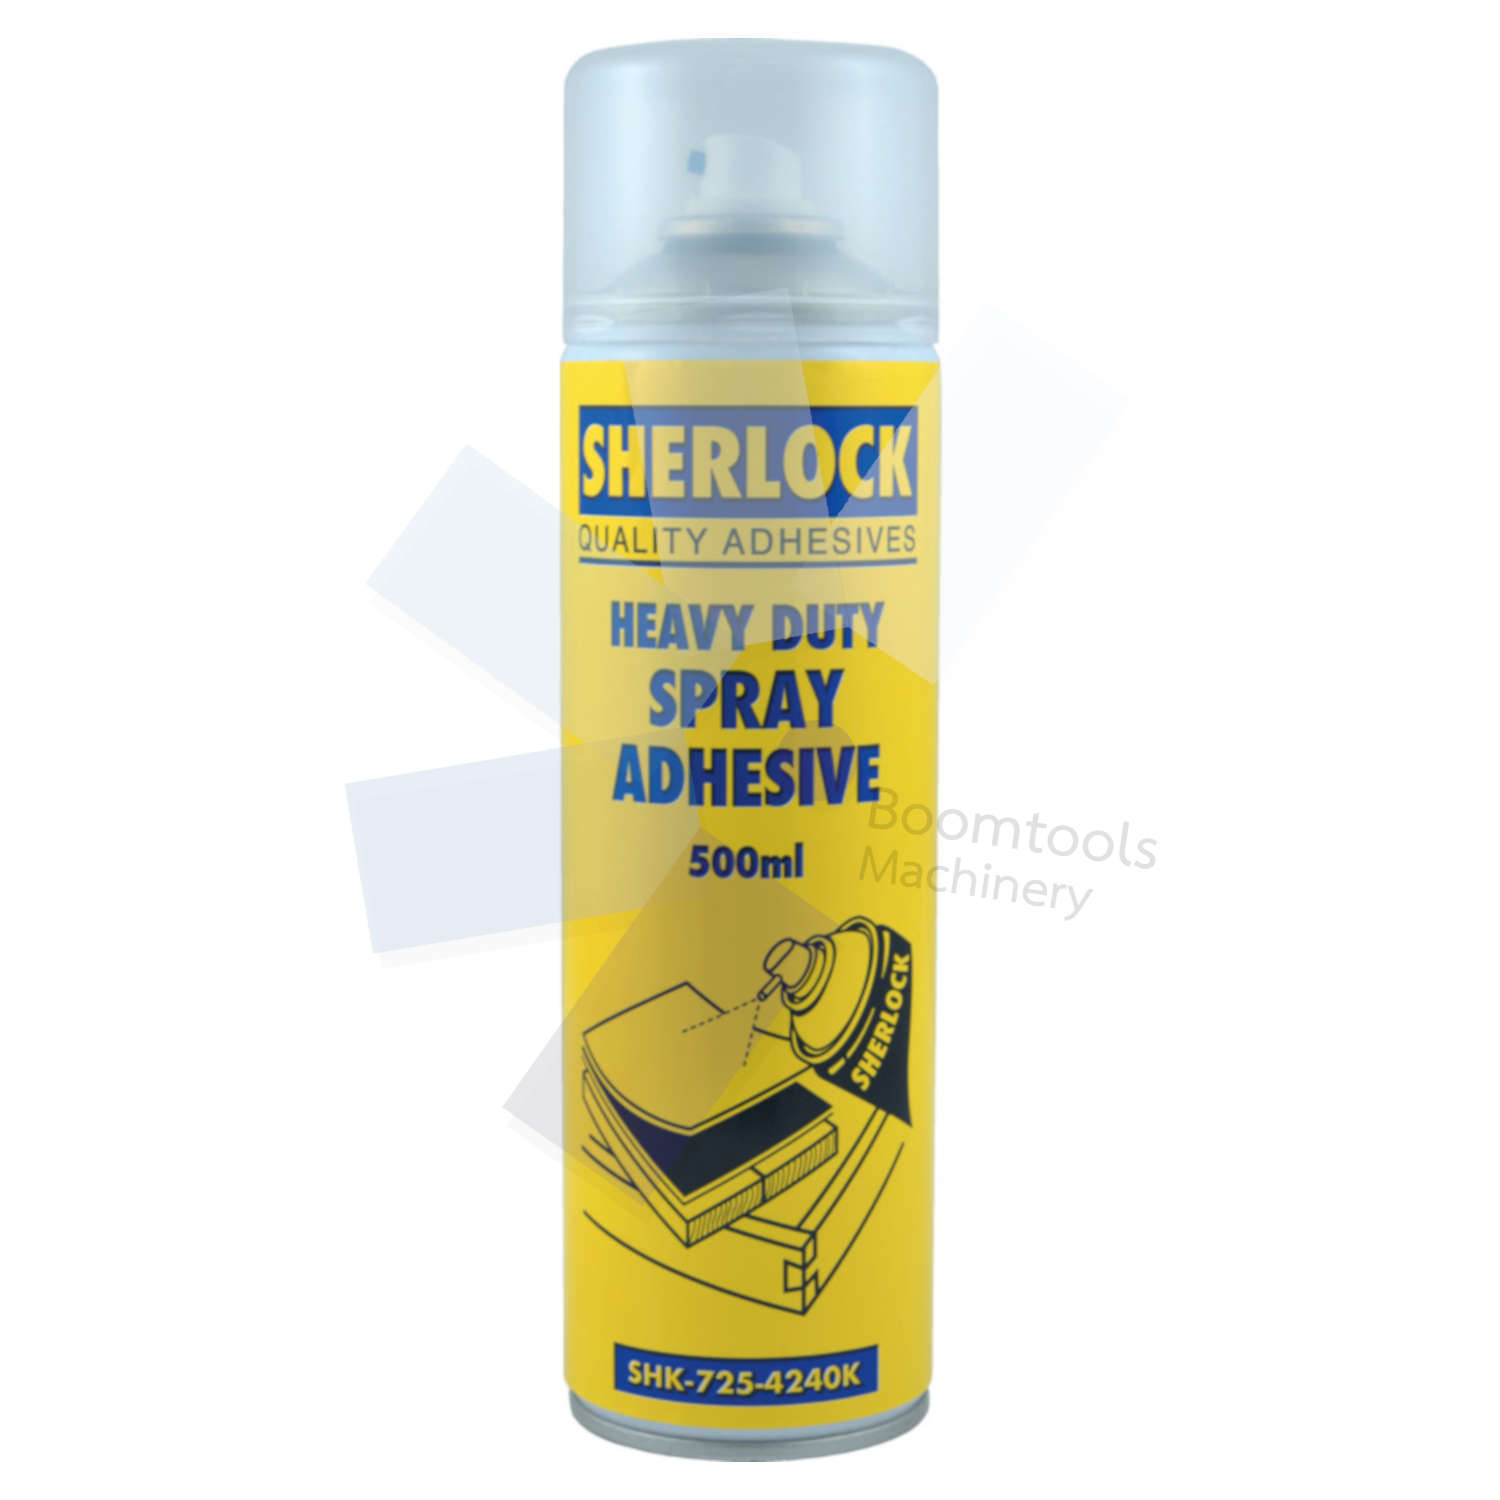 Sherlock Adhesives.Heavy Duty Spray Adhesive 500ml